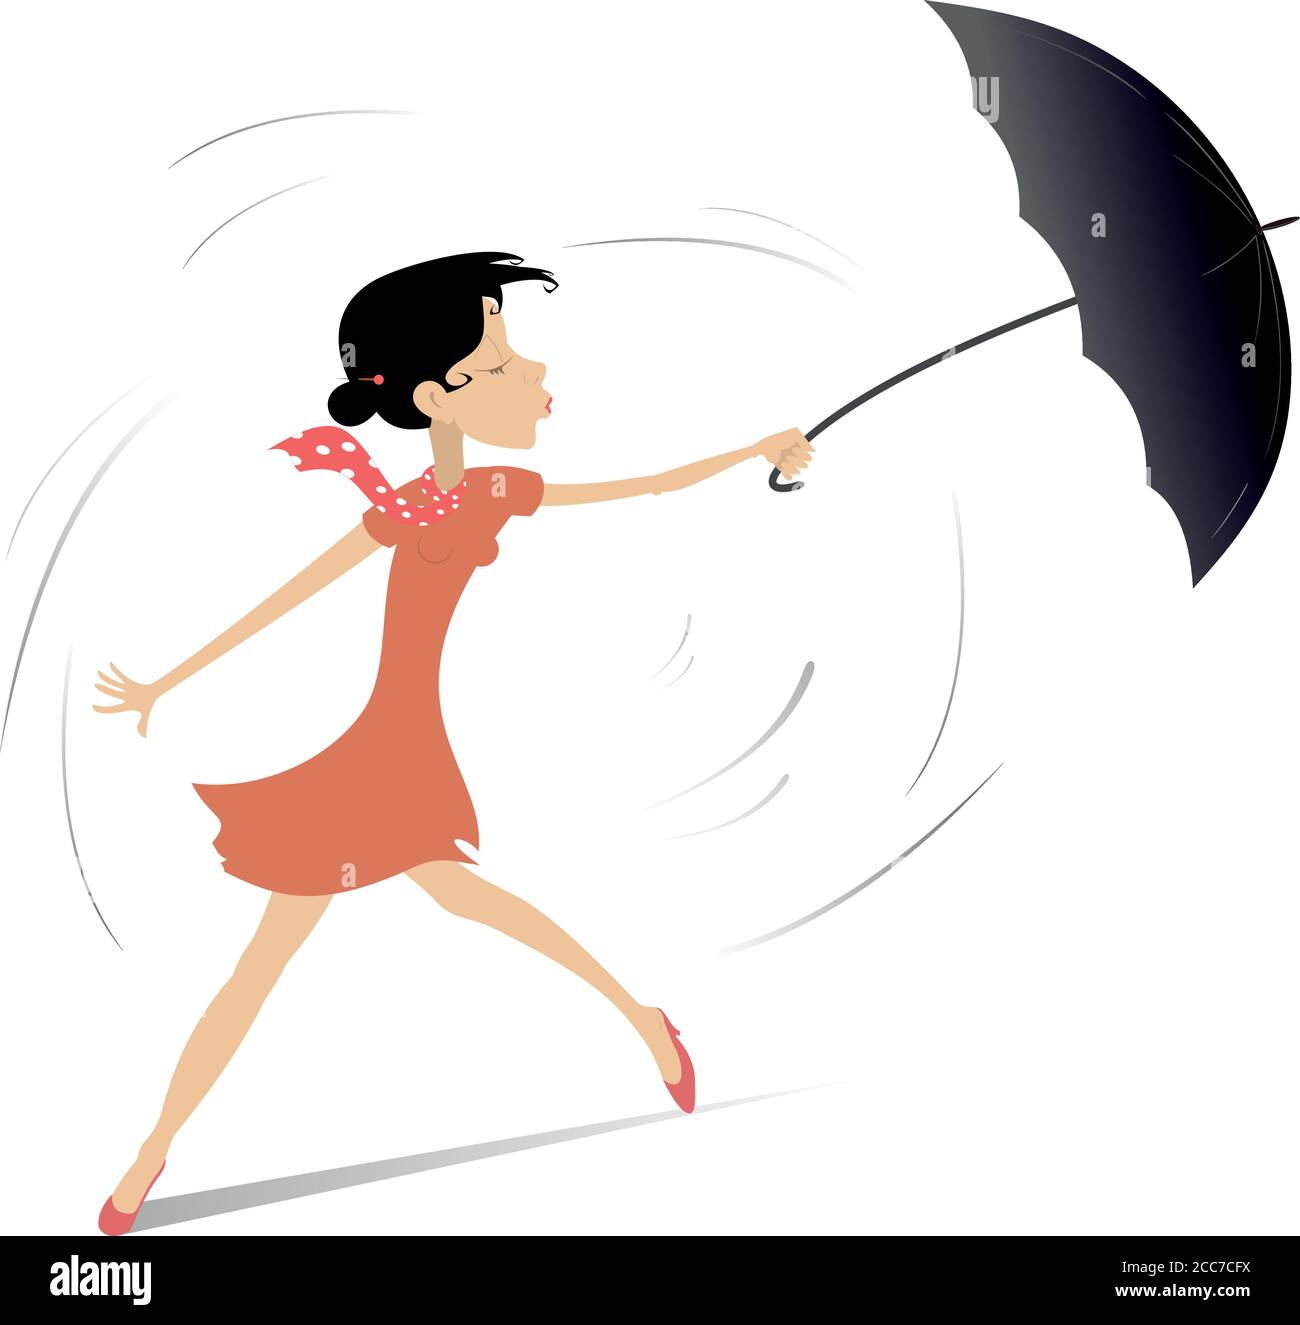 Windiger und regnerischer Tag und Frau mit Regenschirm Illustration. Hübsche junge Frau hält einen Regenschirm isoliert auf weiß Stock Vektor